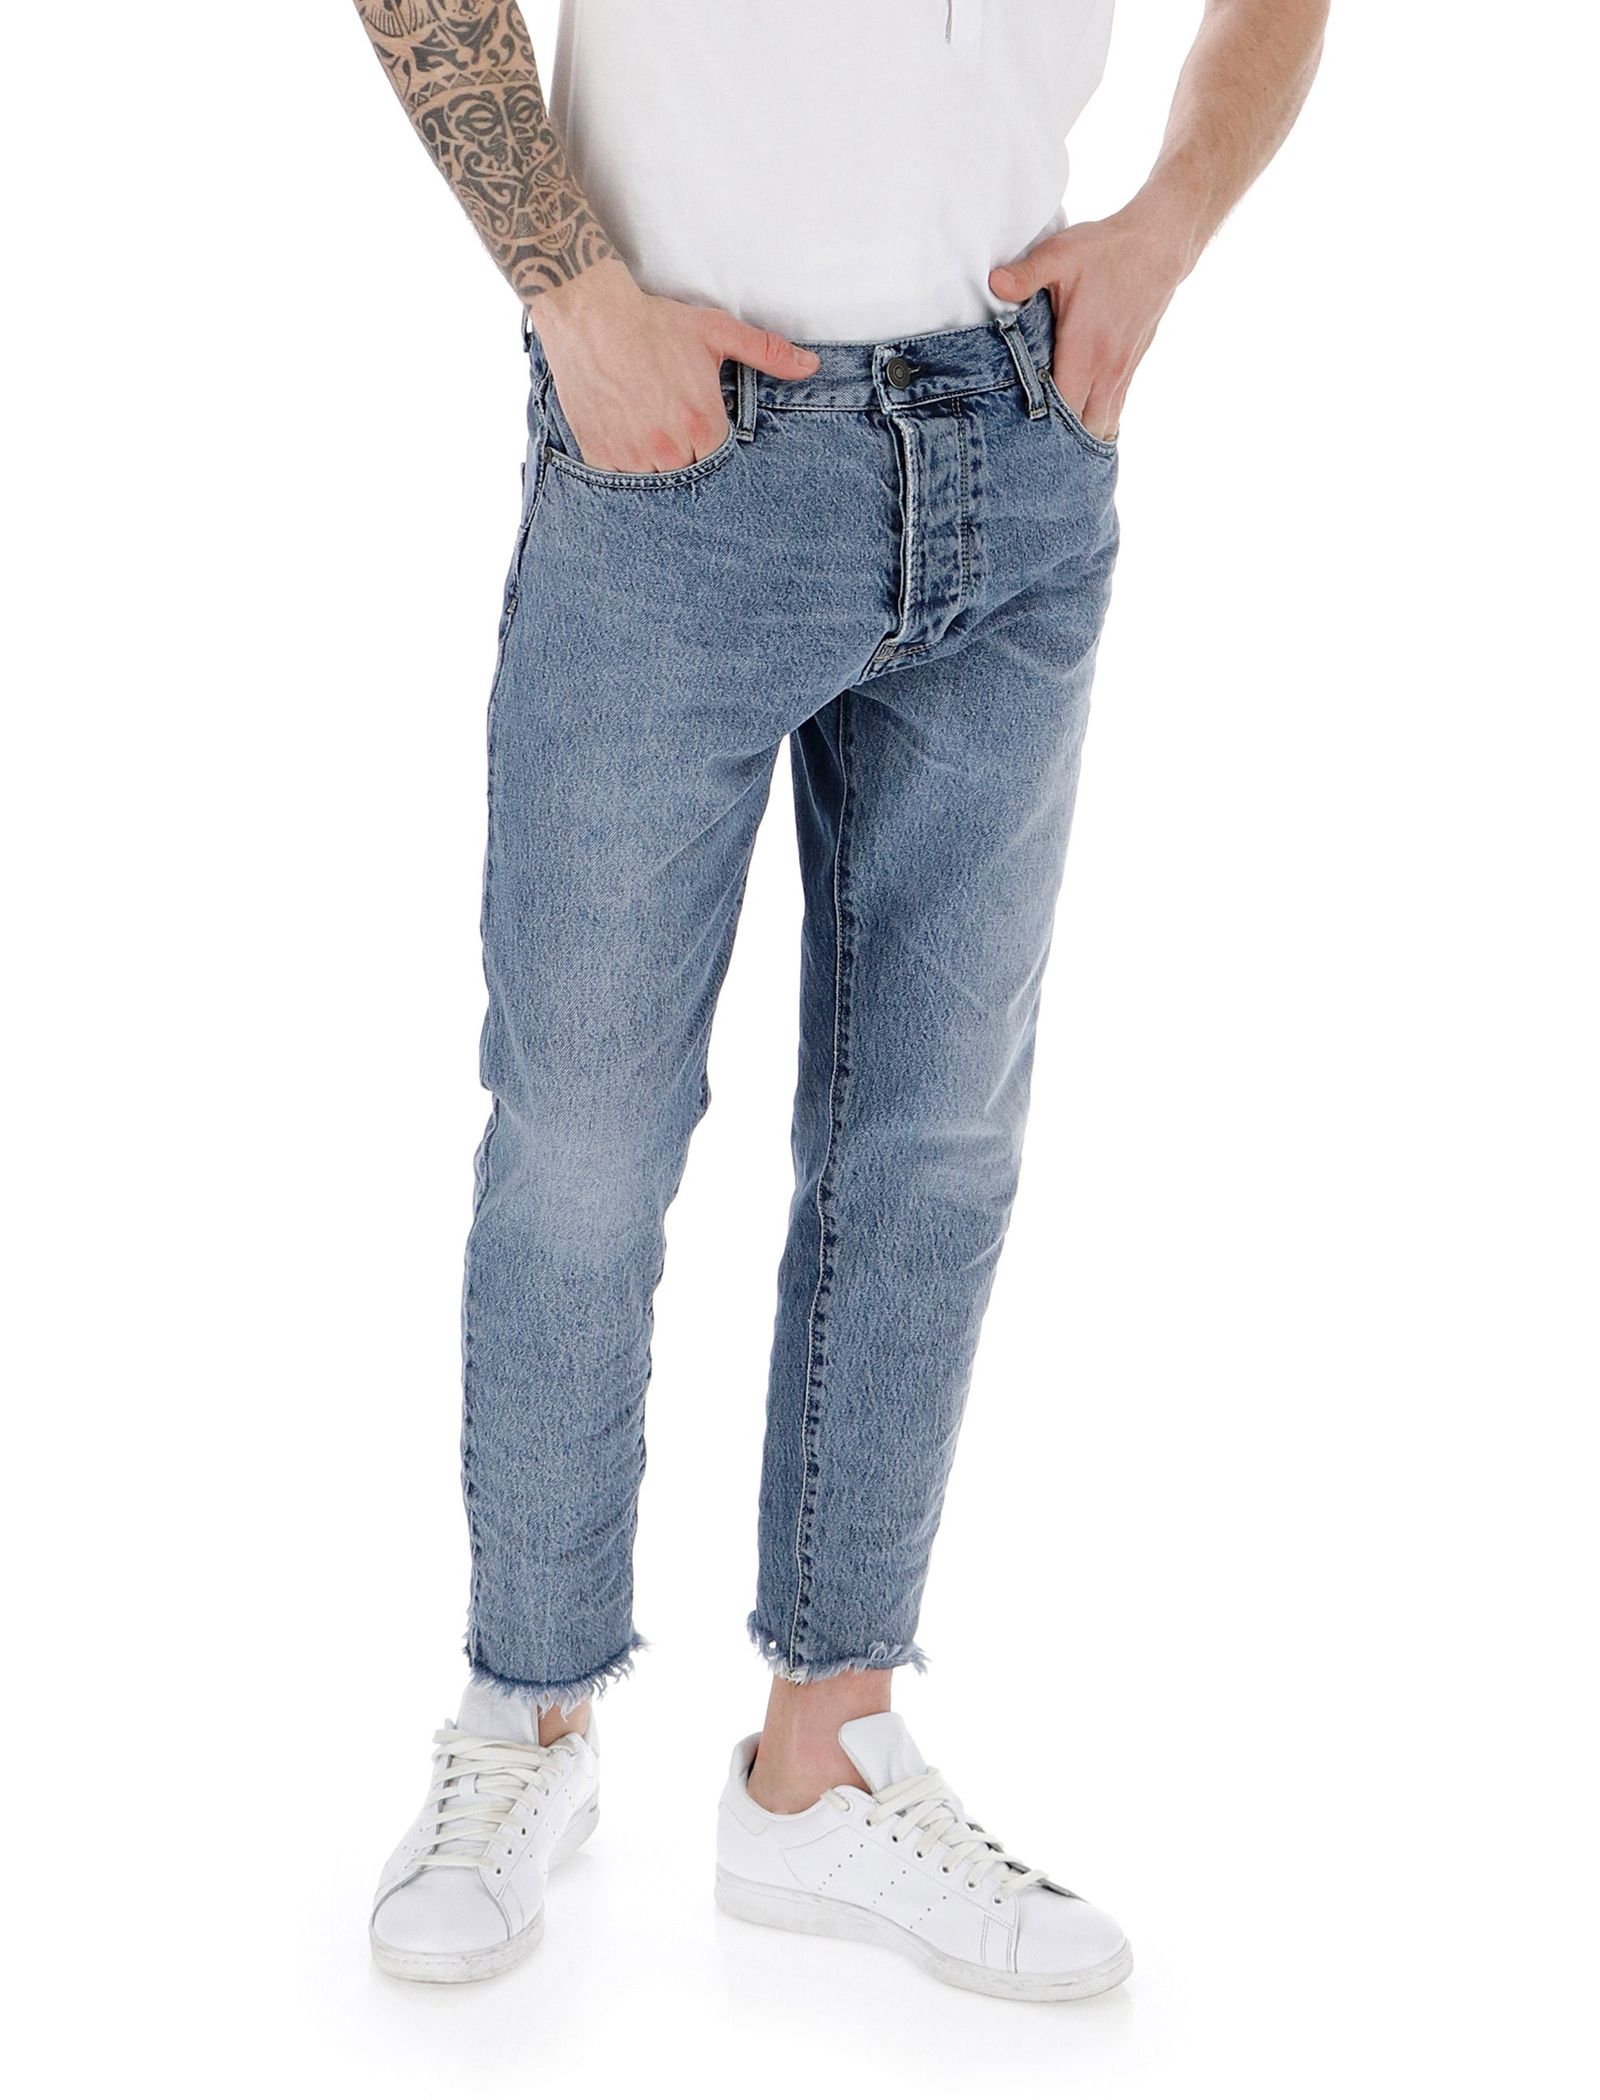 شلوار جین راسته مردانه - امپریال - آبي  - 3